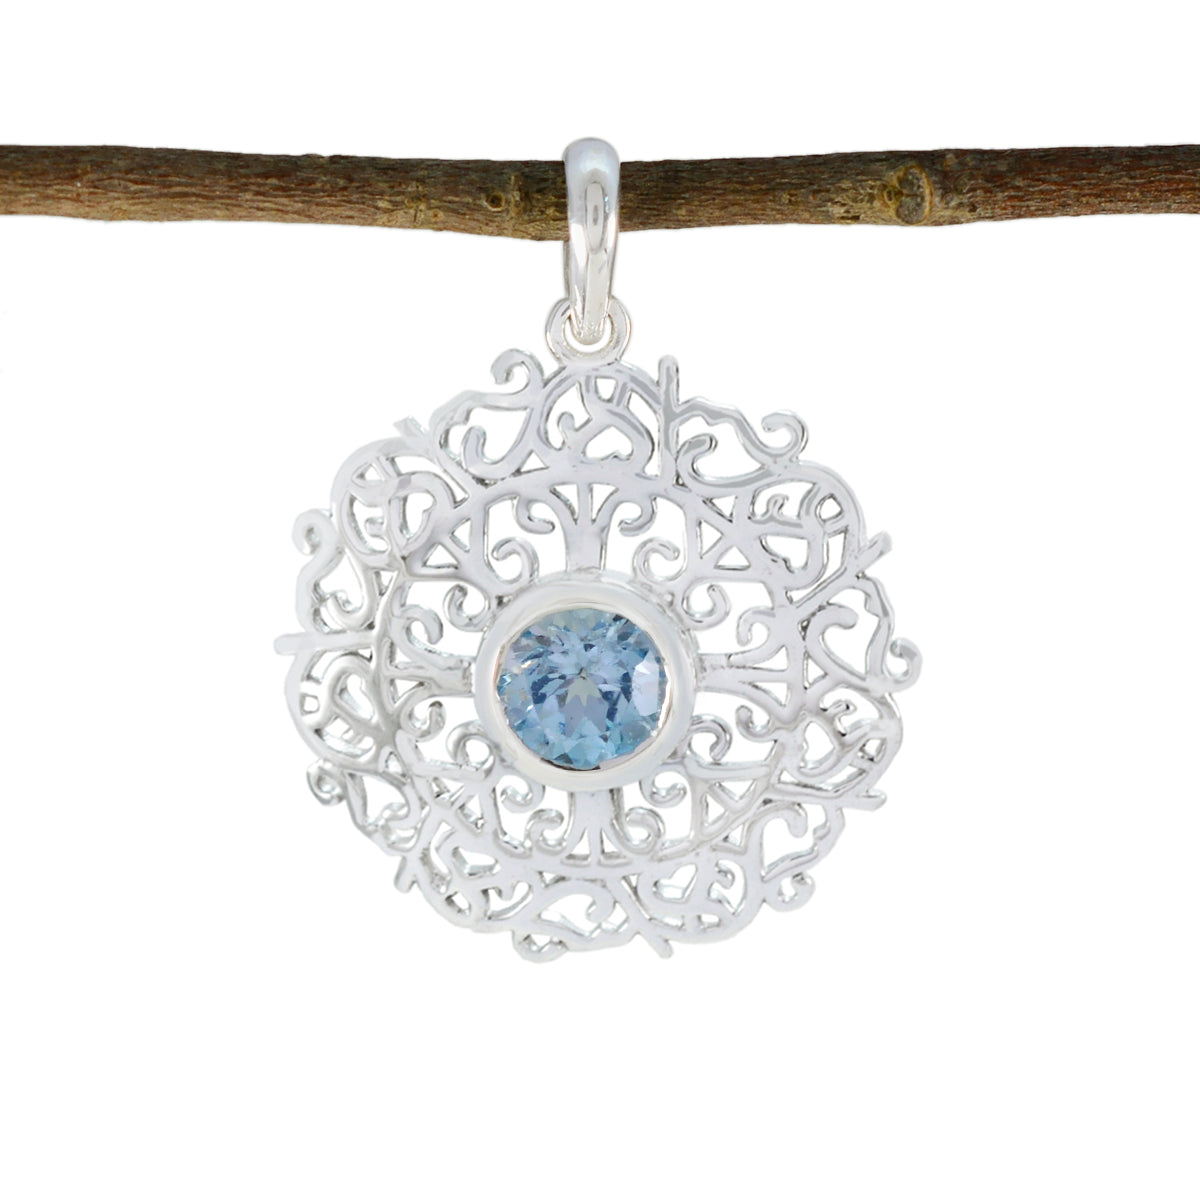 Riyo Beddable Gems ronde gefacetteerde blauw blauwe topaas massief zilveren hanger cadeau voor jubileum